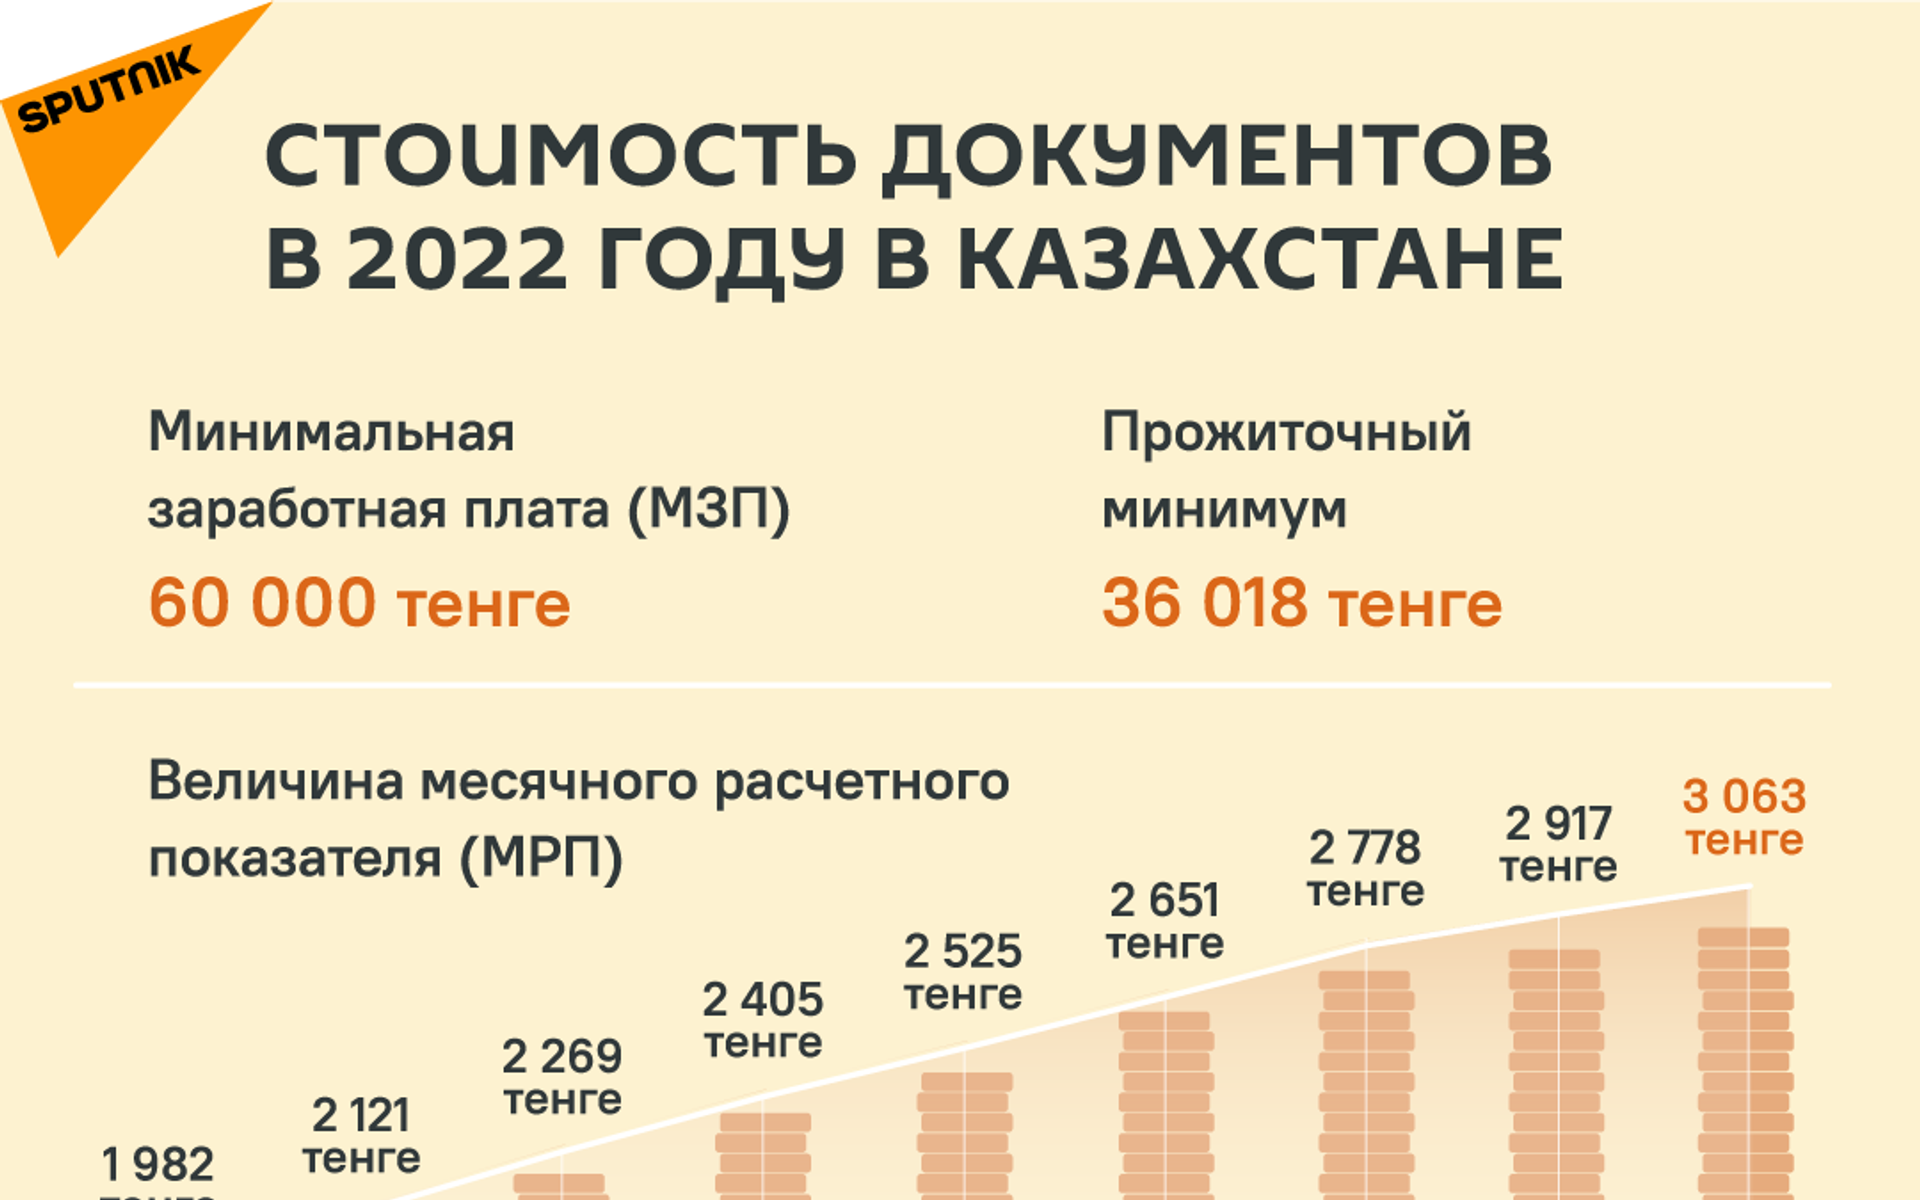 Стоимость документов в 2022 году - Sputnik Казахстан, 1920, 01.02.2022